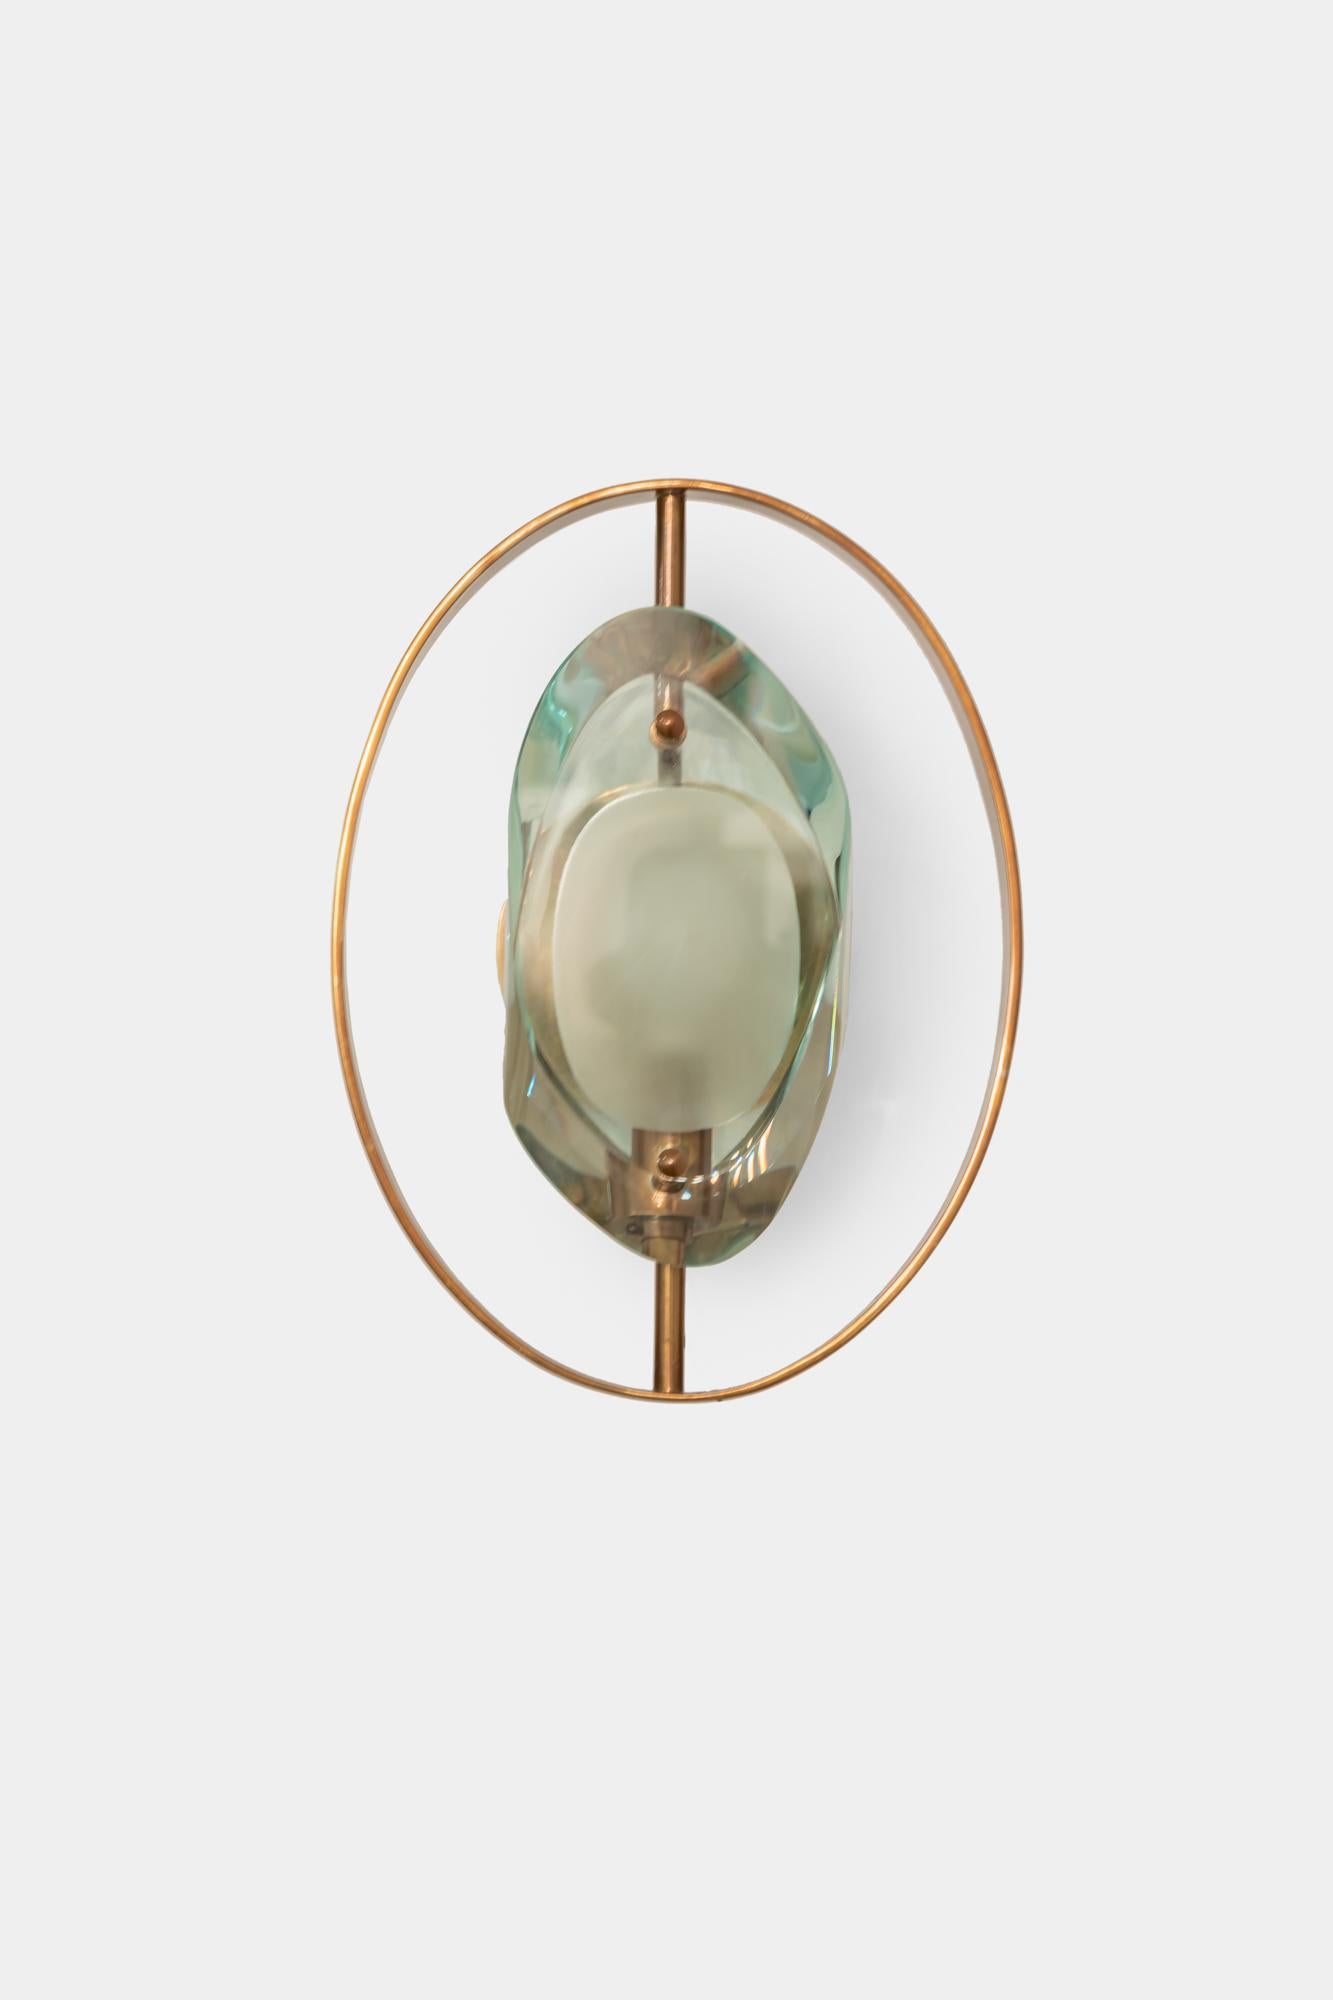 Max Ingrand für Fontana Arte, seltenes Paar 'Micro'-Leuchten, Modell 2240, mit geschliffenen Doppellinsen aus dickem, geschliffenem Glas mit säuregeätzten Glaskörpern und Messingbeschlägen.
Neu verdrahtet nach US-Normen, einschließlich UL-Listung